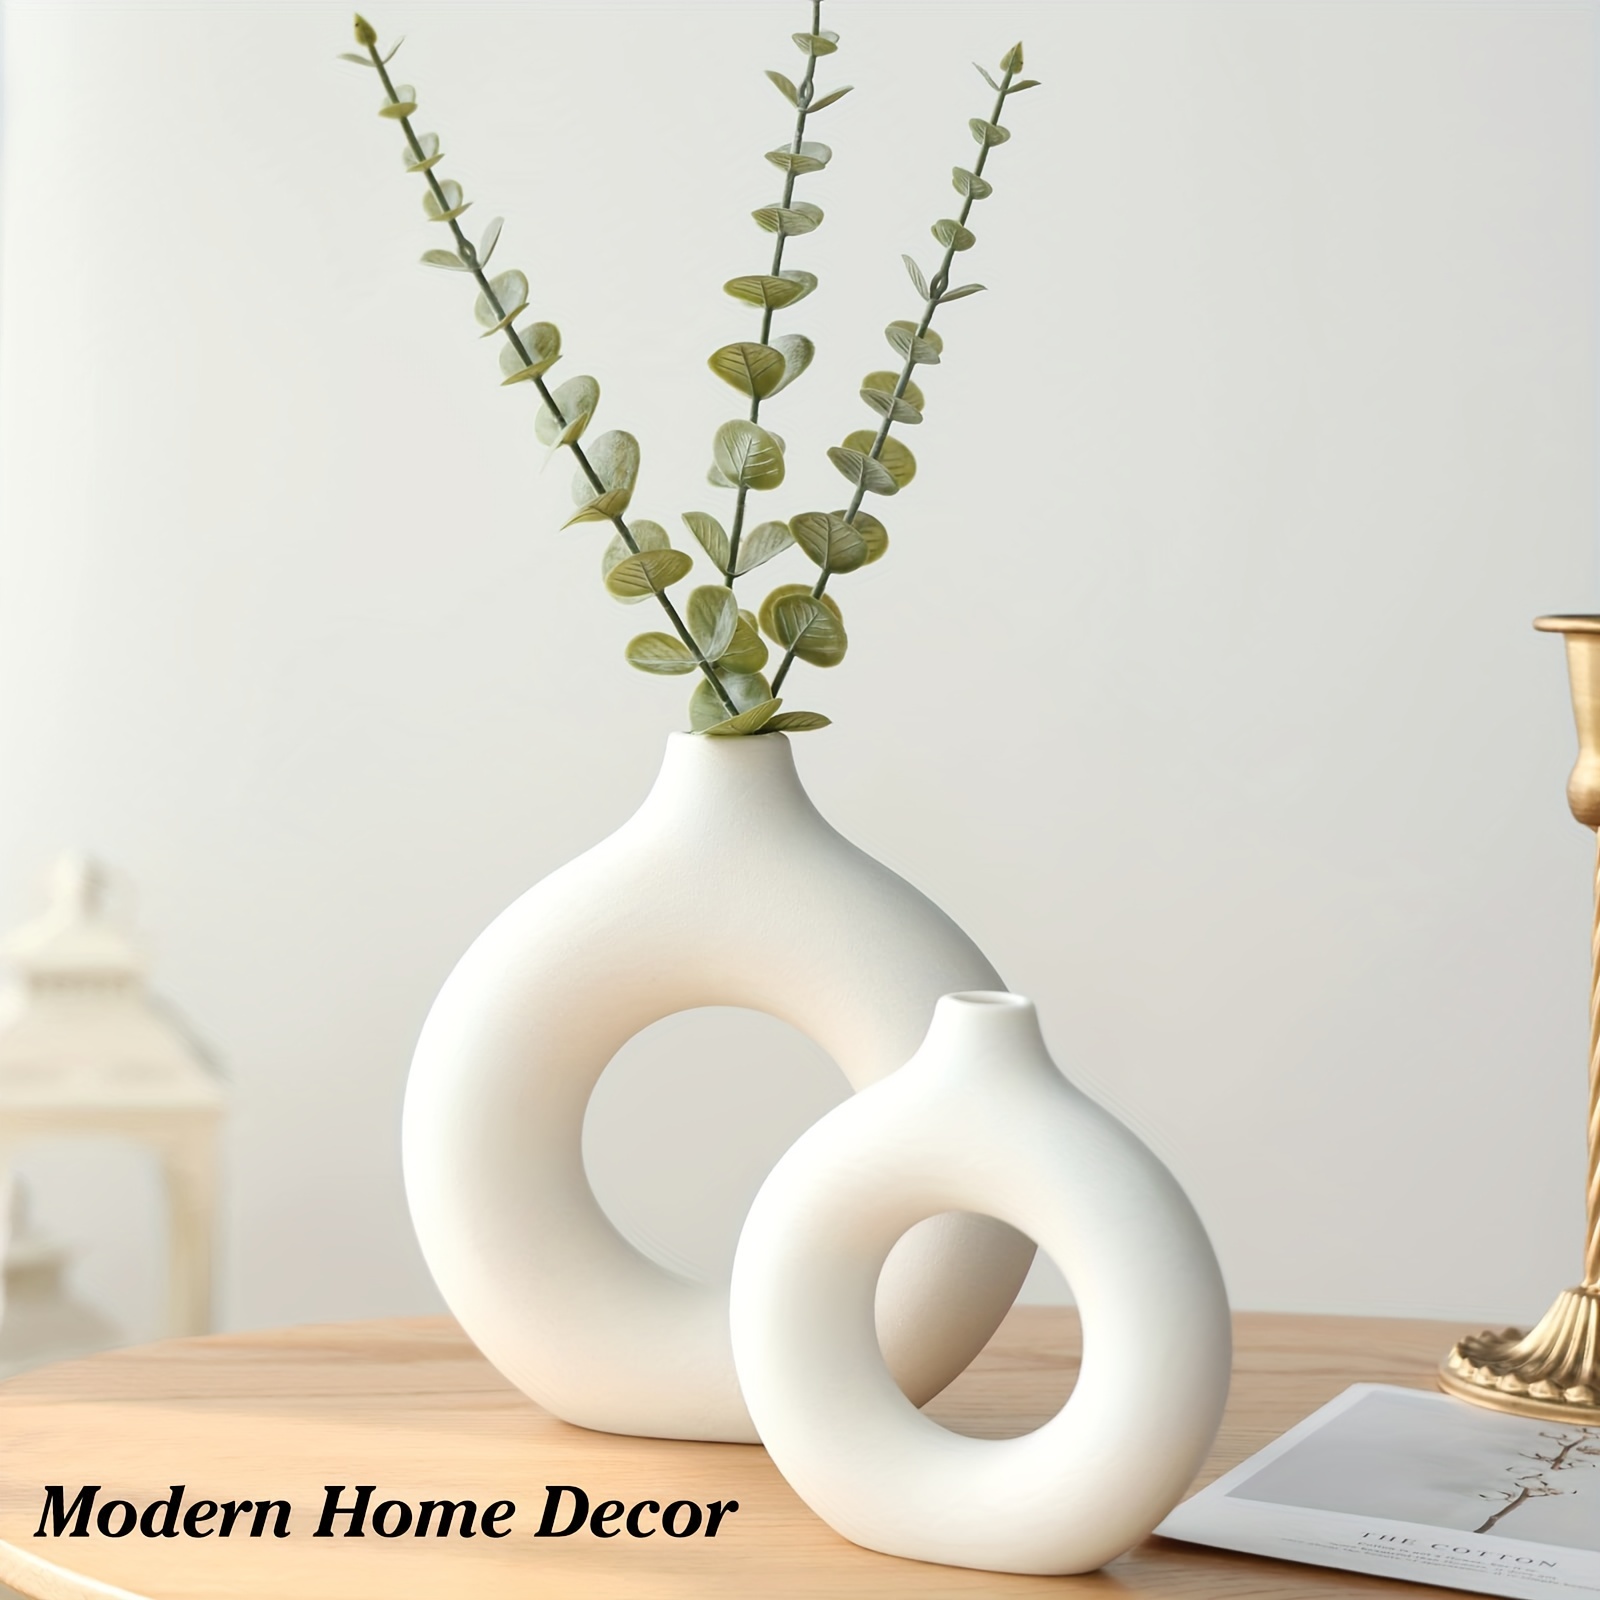 Juego de 2 jarrones de cerámica circulares modernos de color blanco, diseño  nórdico circular mate hueco, floreros decorativos minimalistas, estilo